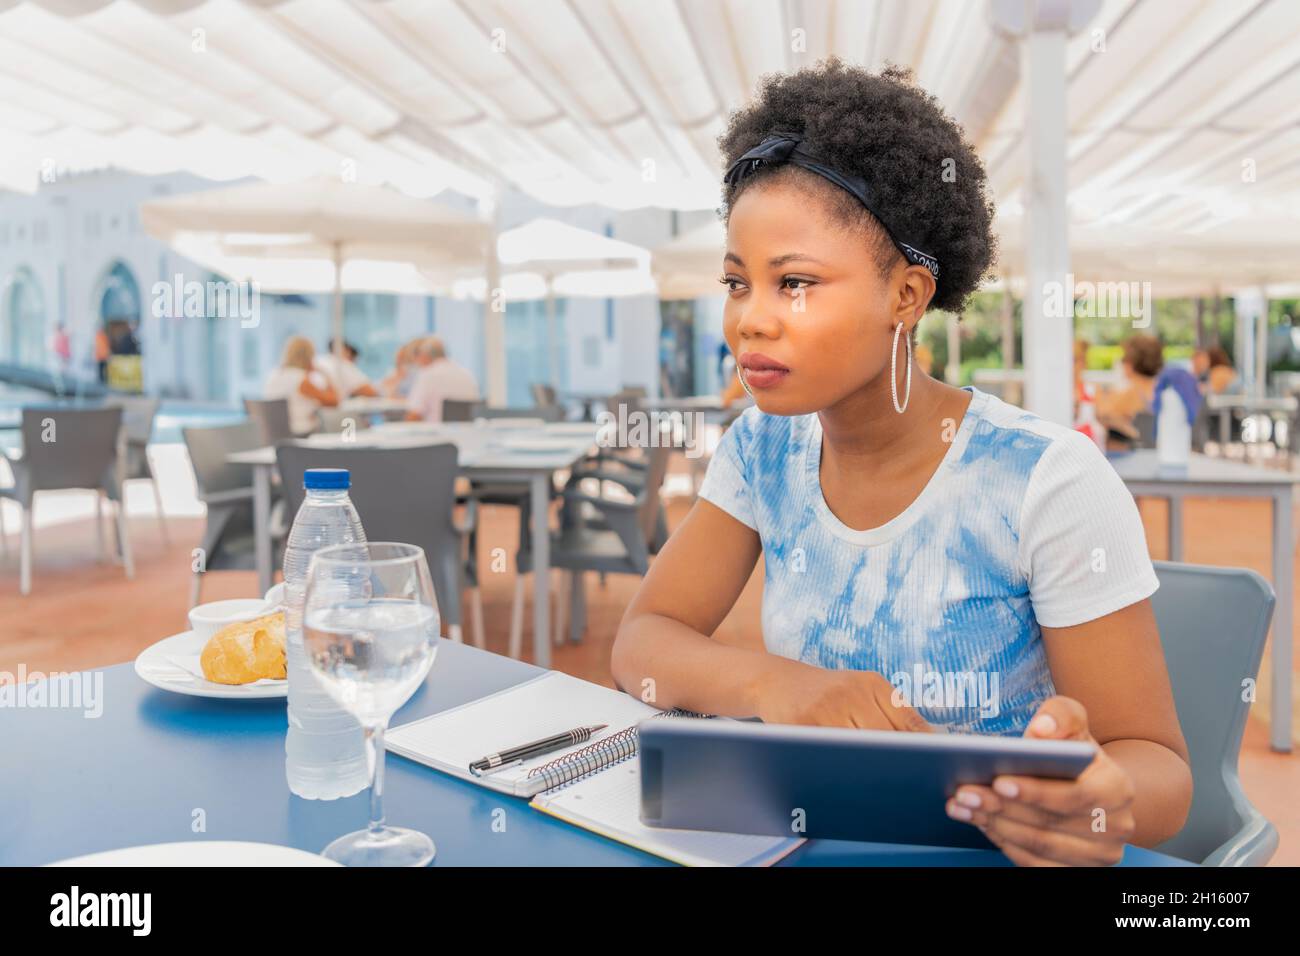 Une femme adulte assise dans un restaurant en plein air avec un toit à l'aide de sa tablette numérique tout en regardant loin avec un ordinateur portable et un stylo sur une table Banque D'Images